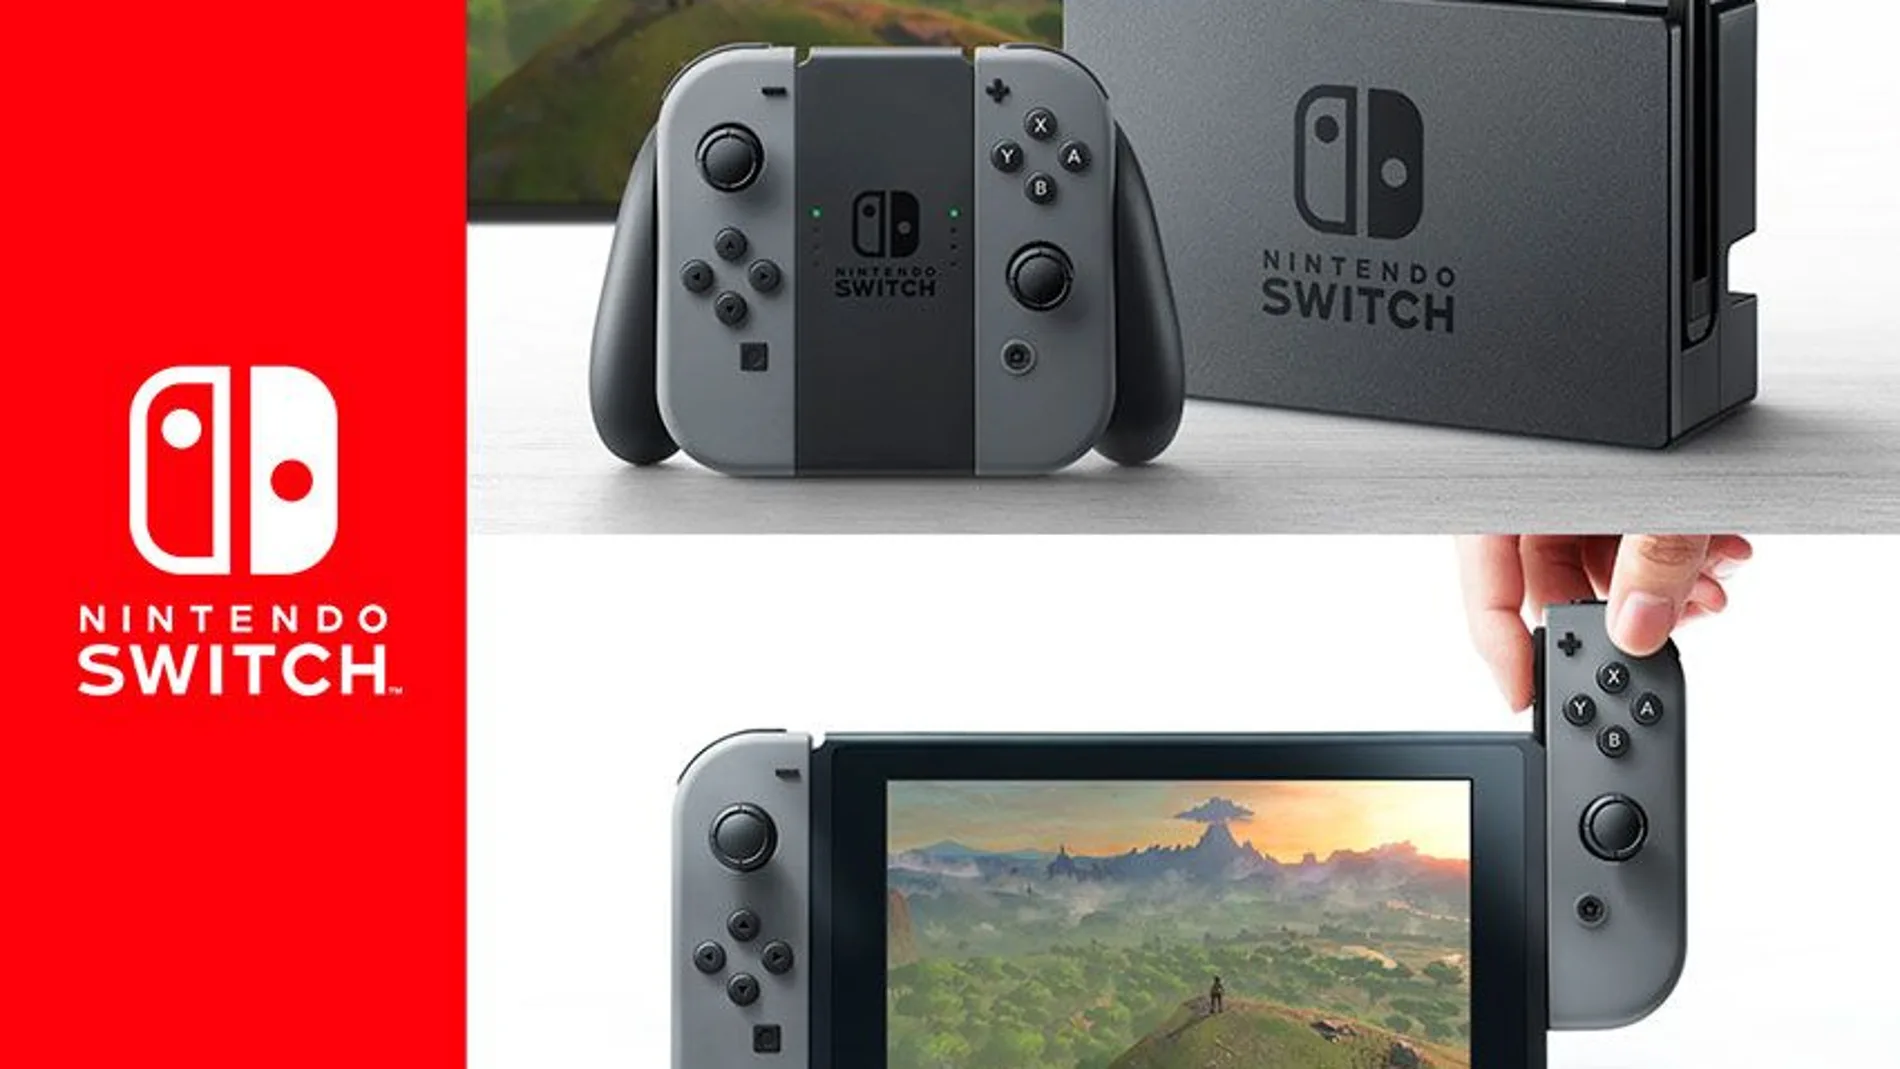 Tatsumi Kimishima ofrece detalles de la nueva Nintendo Switch